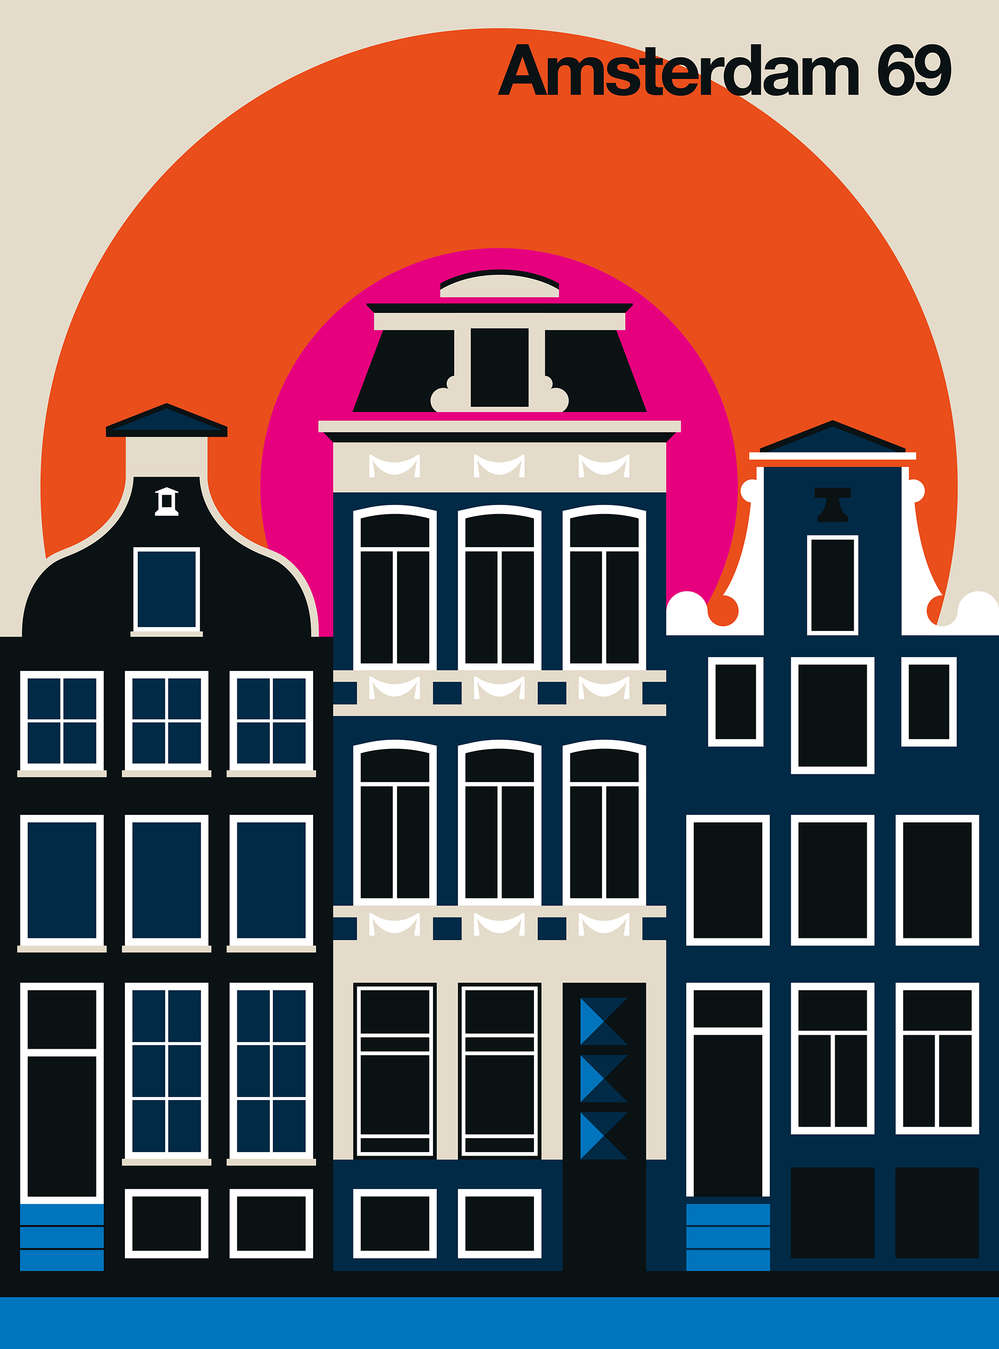             Amsterdamse woningfronten in retro design muurschildering
        